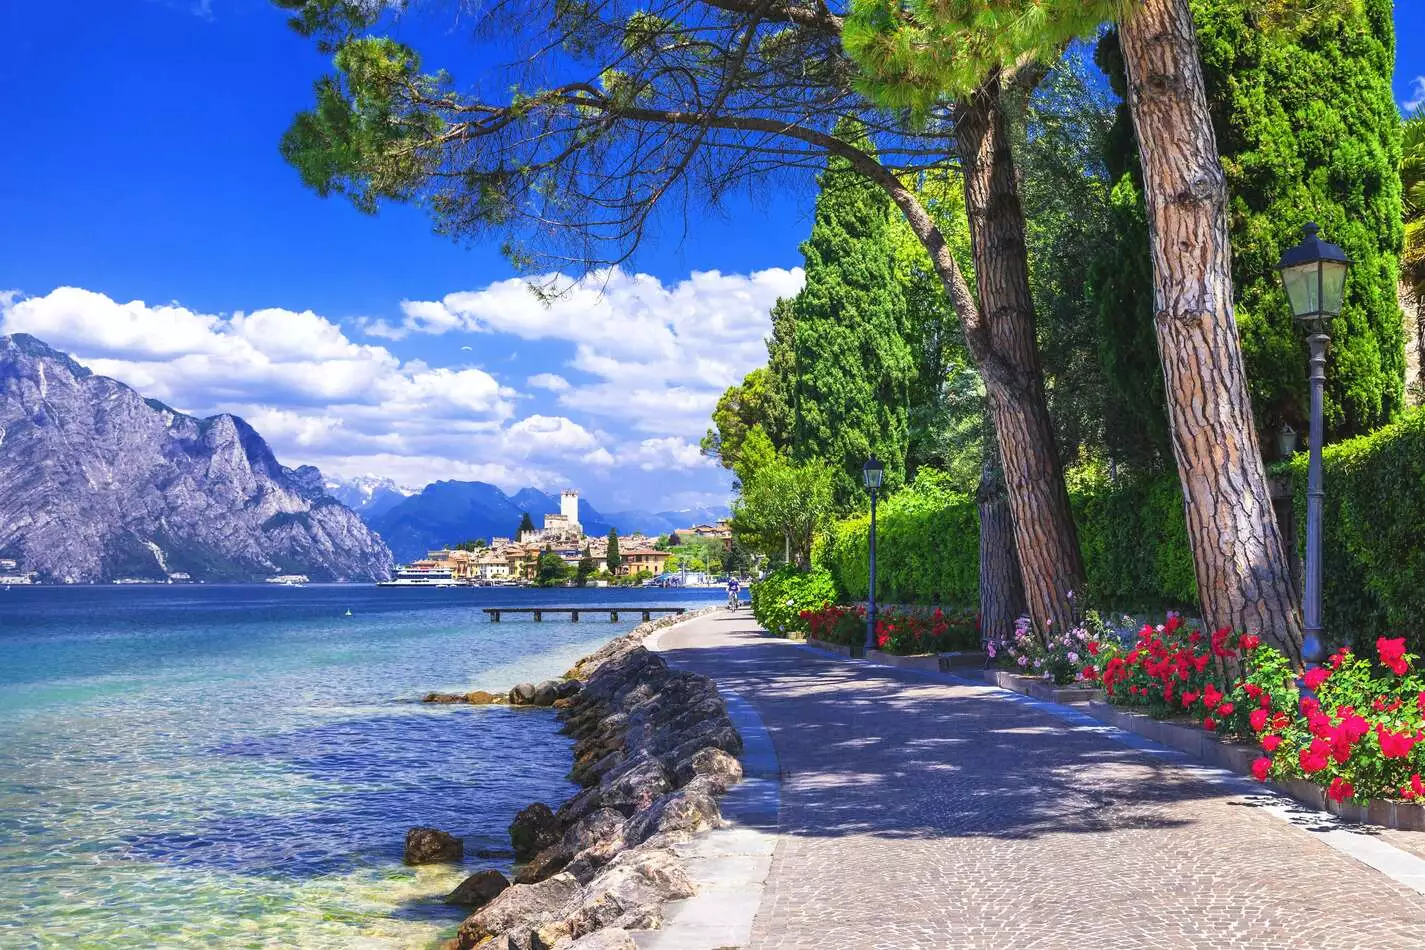 Lago-di-Garda